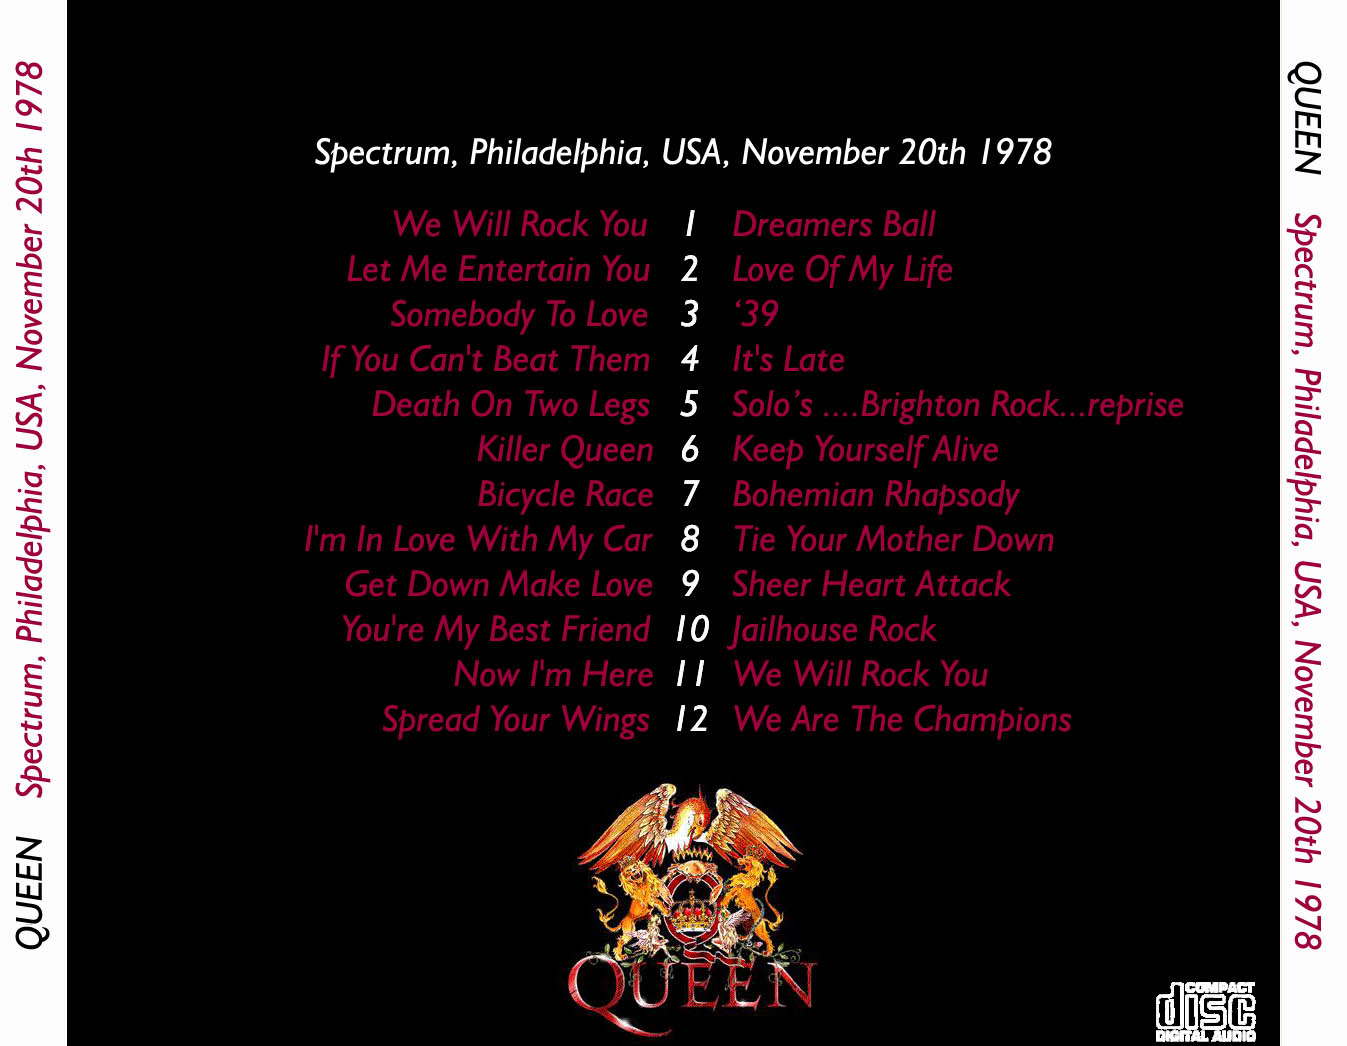 Queen1978-11-20TheSpectrumPhiladelphiaPA (1).jpg